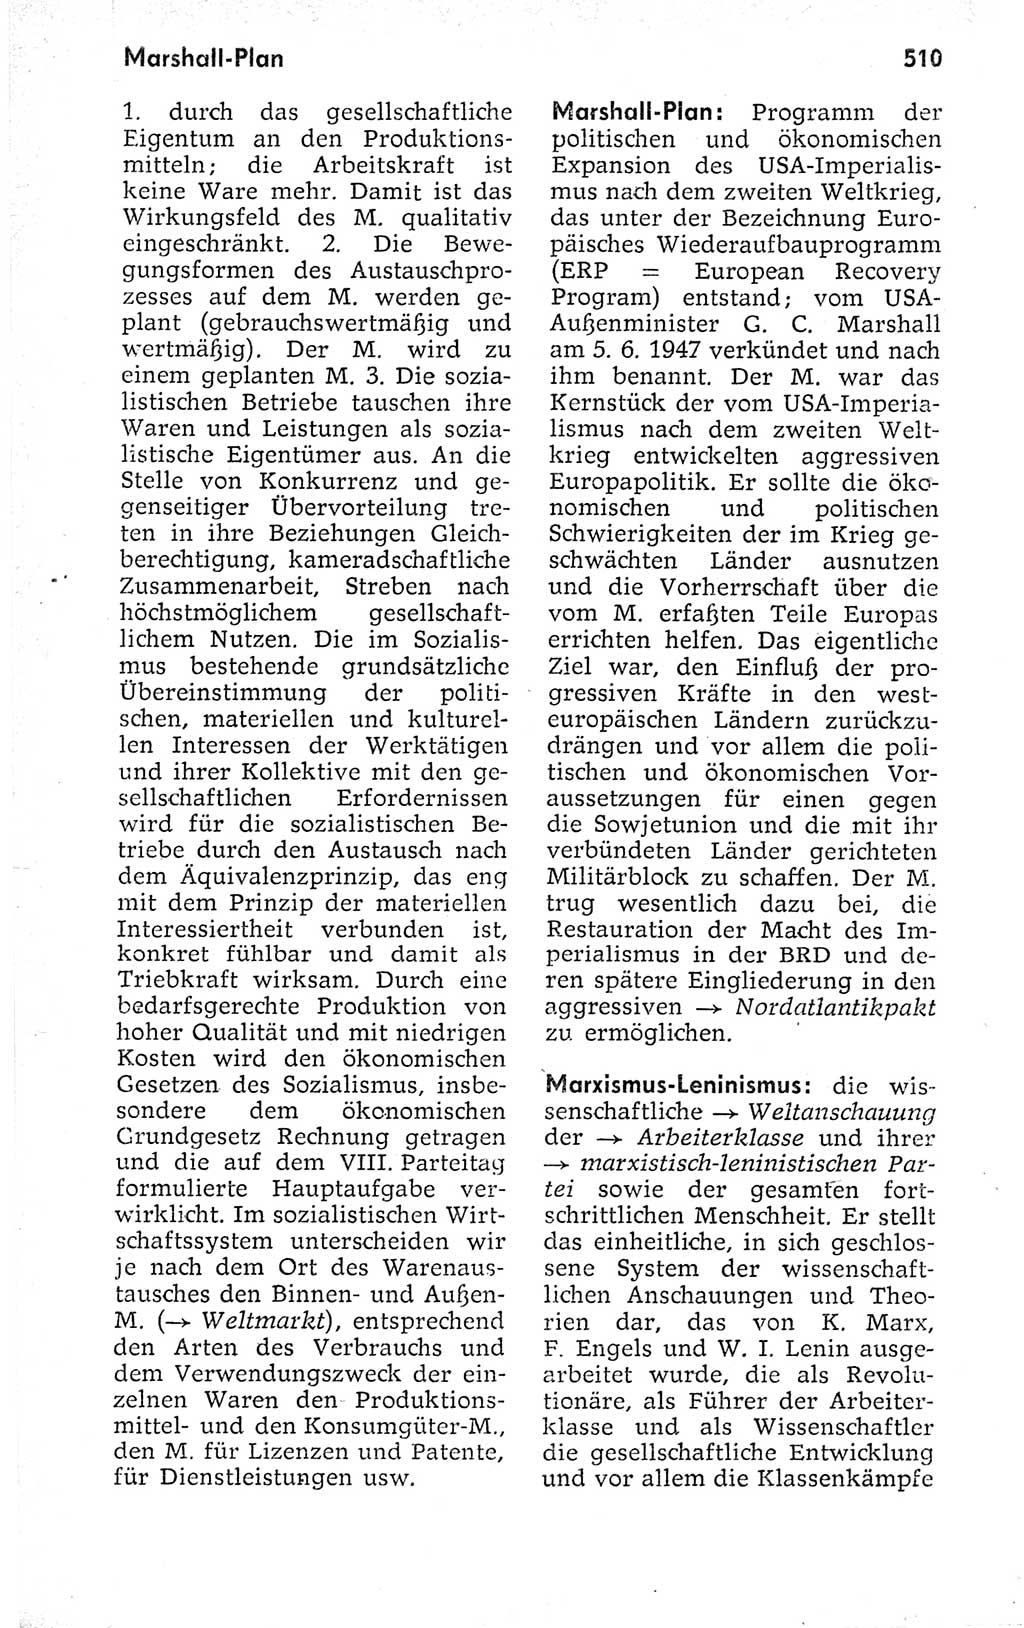 Kleines politisches Wörterbuch [Deutsche Demokratische Republik (DDR)] 1973, Seite 510 (Kl. pol. Wb. DDR 1973, S. 510)